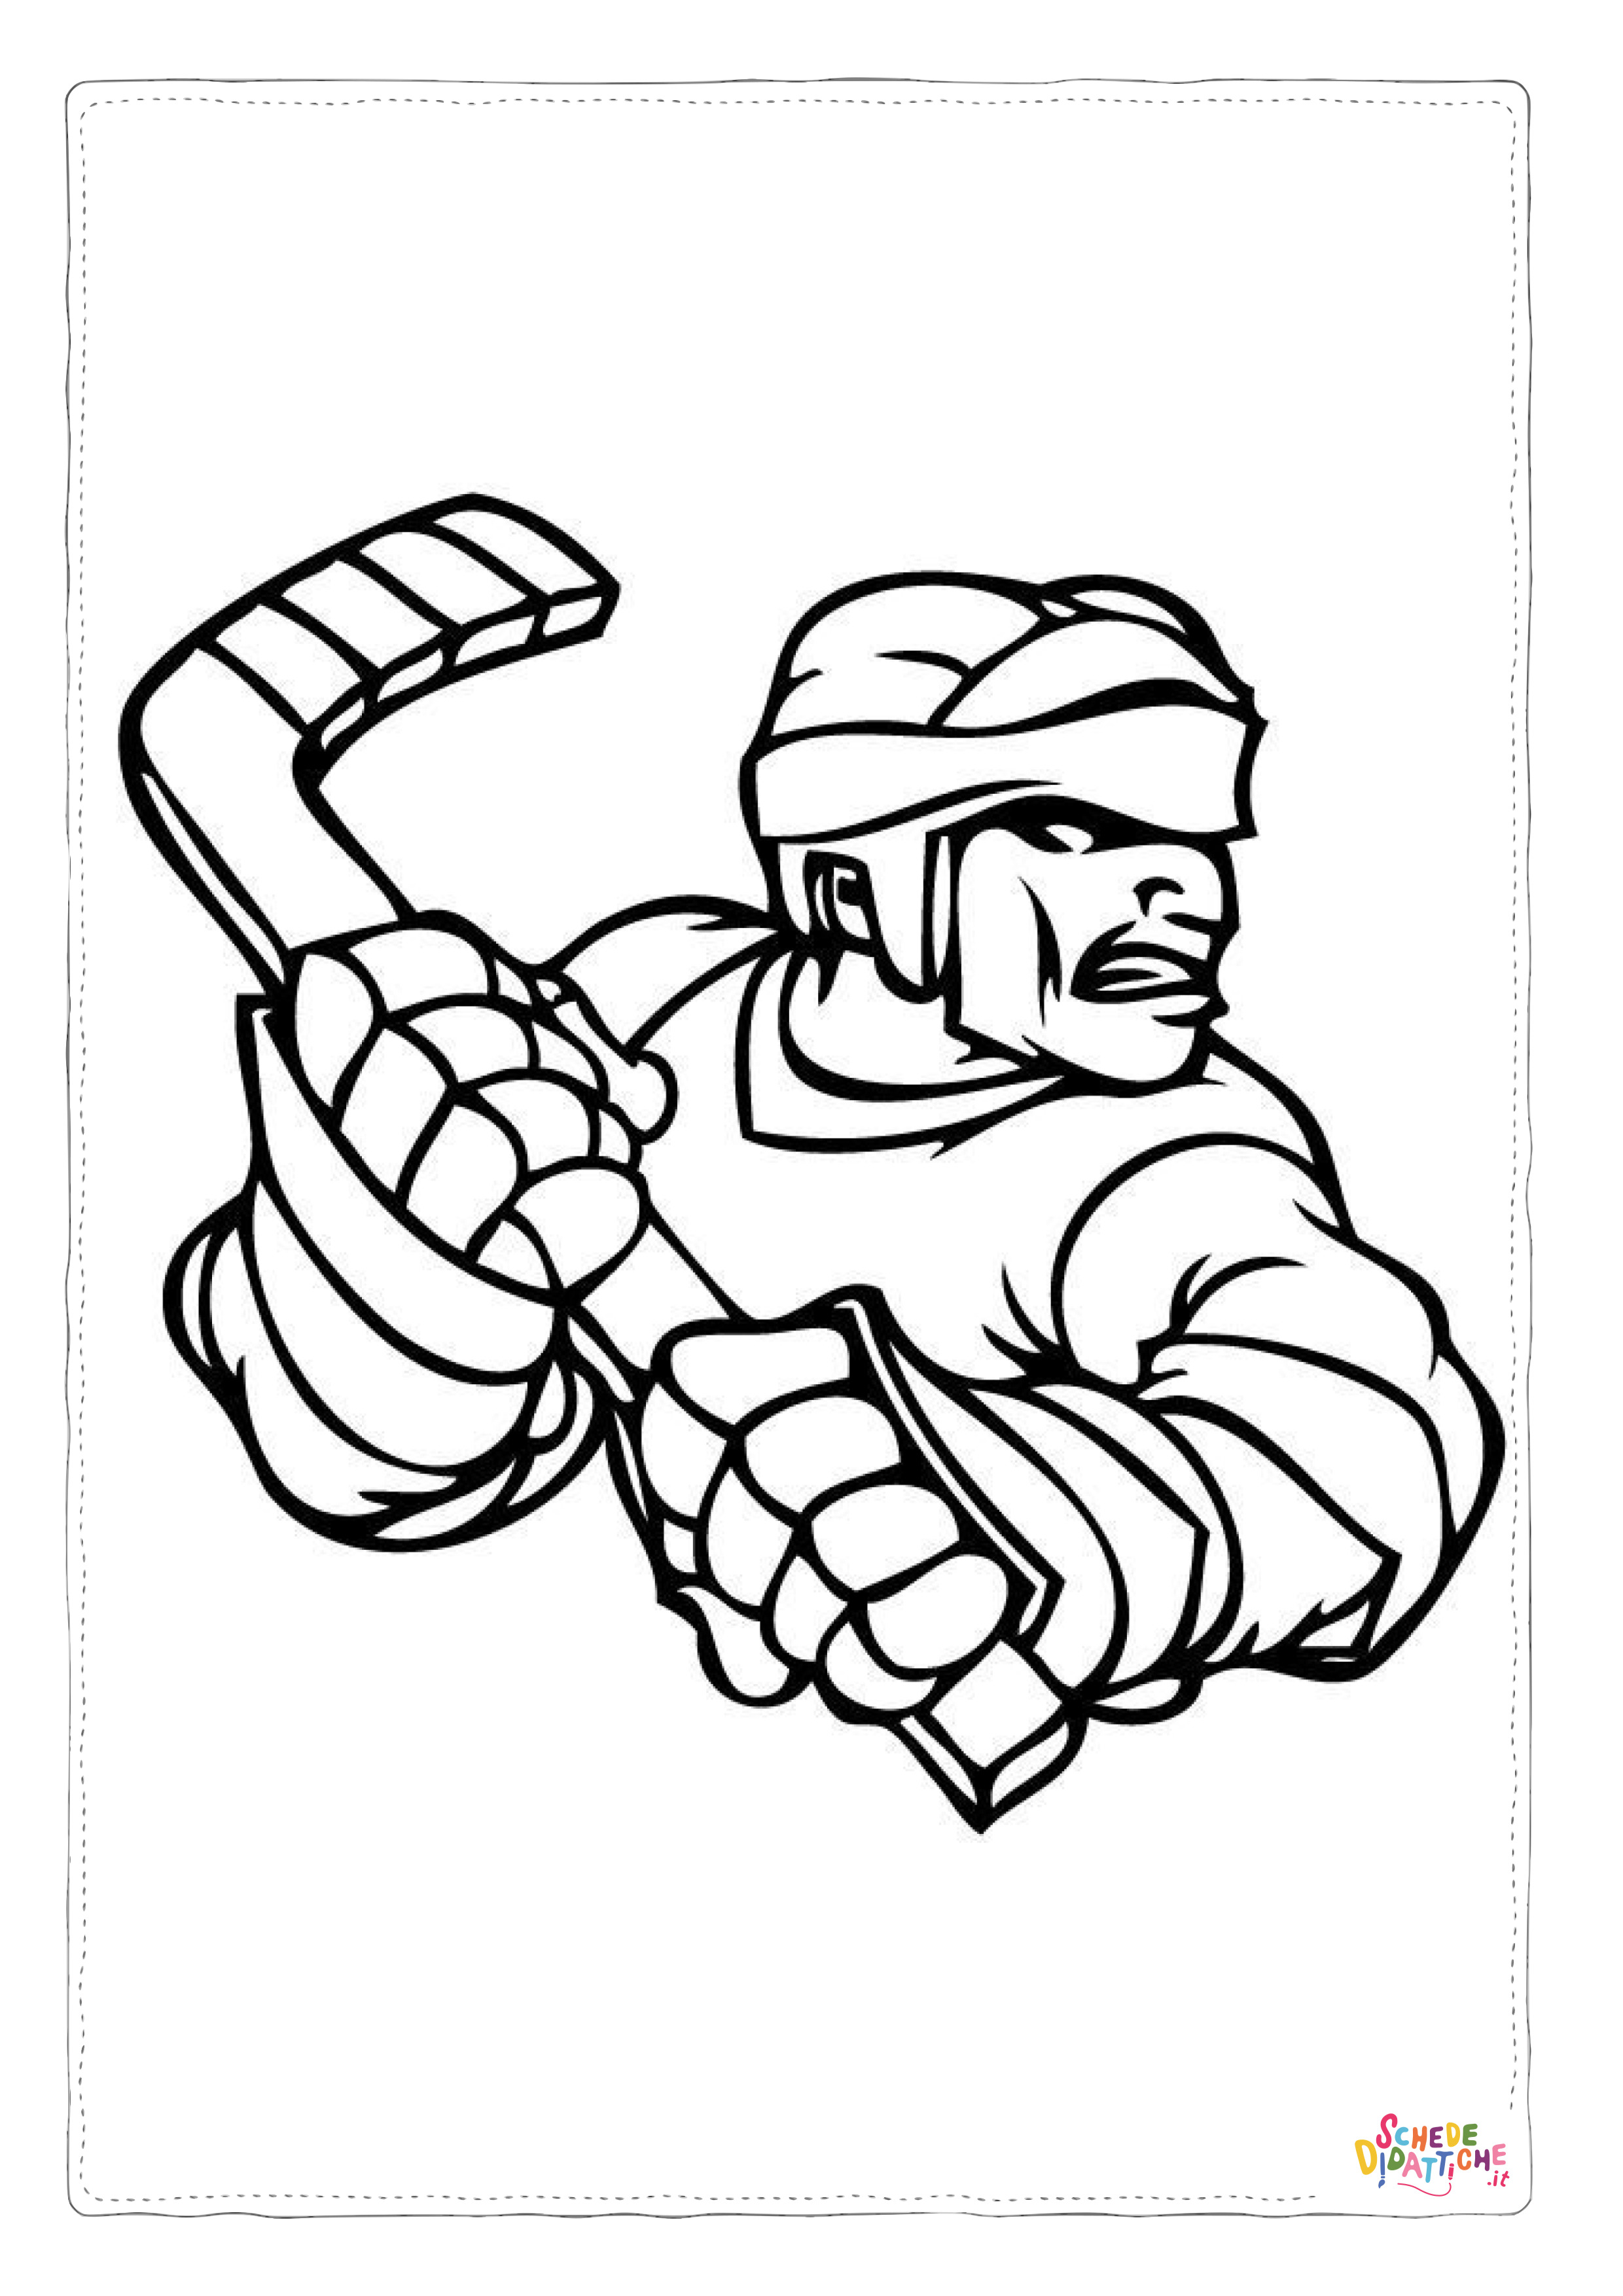 Disegno di hockey da stampare e colorare 2